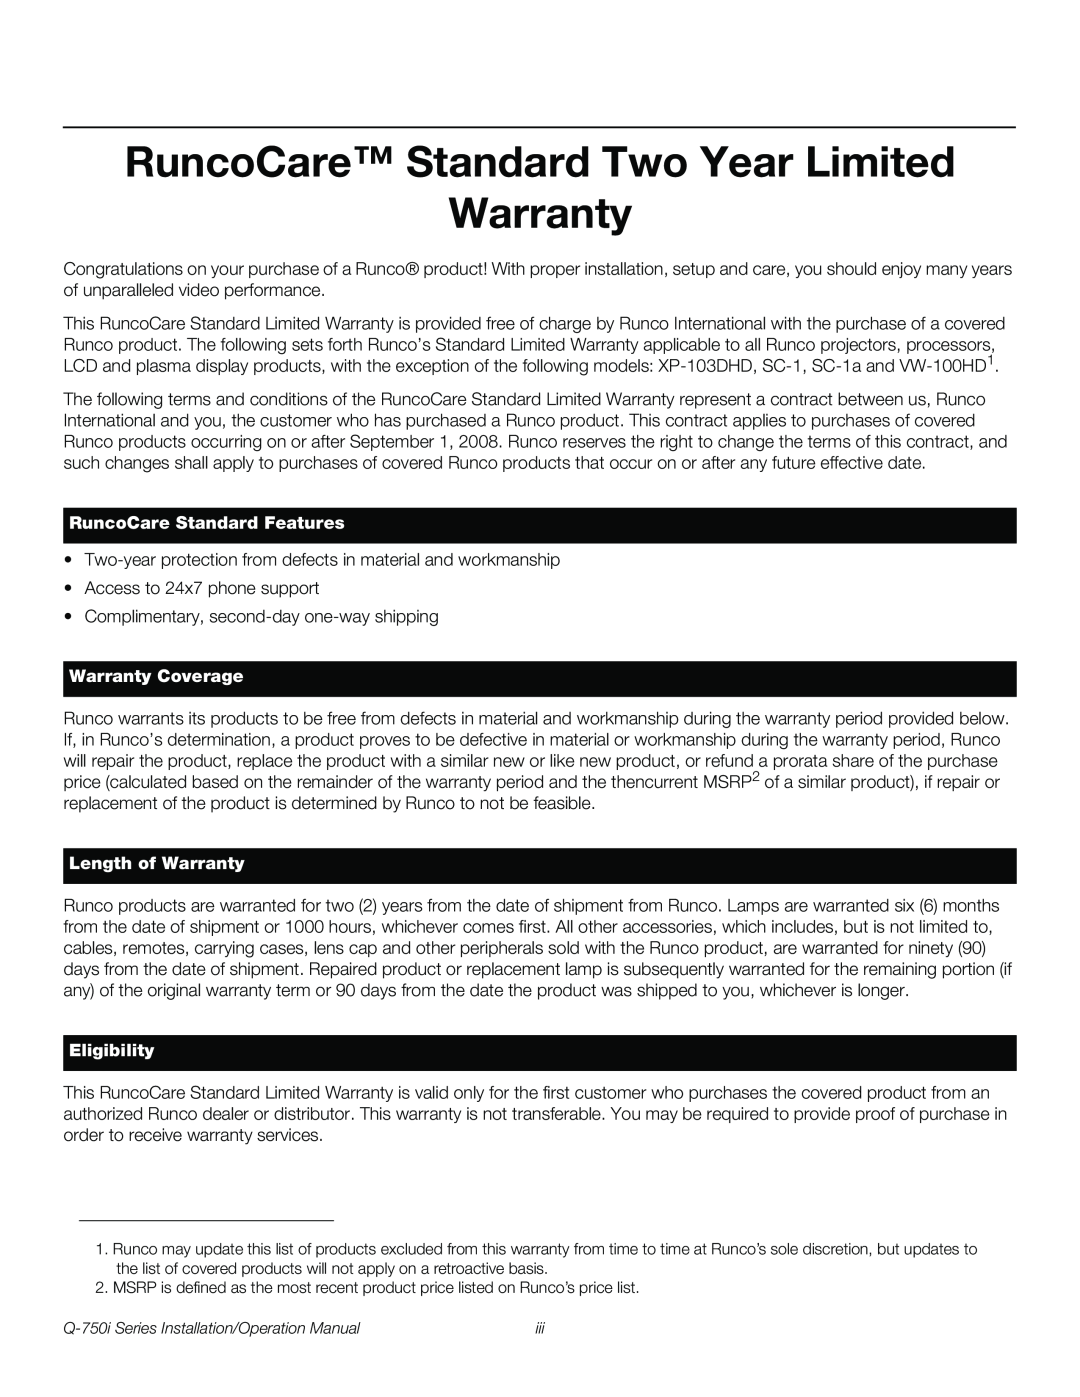 Runco Q-750I RuncoCare Standard Two Year Limited Warranty, RuncoCare Standard Features, Warranty Coverage, Eligibility 